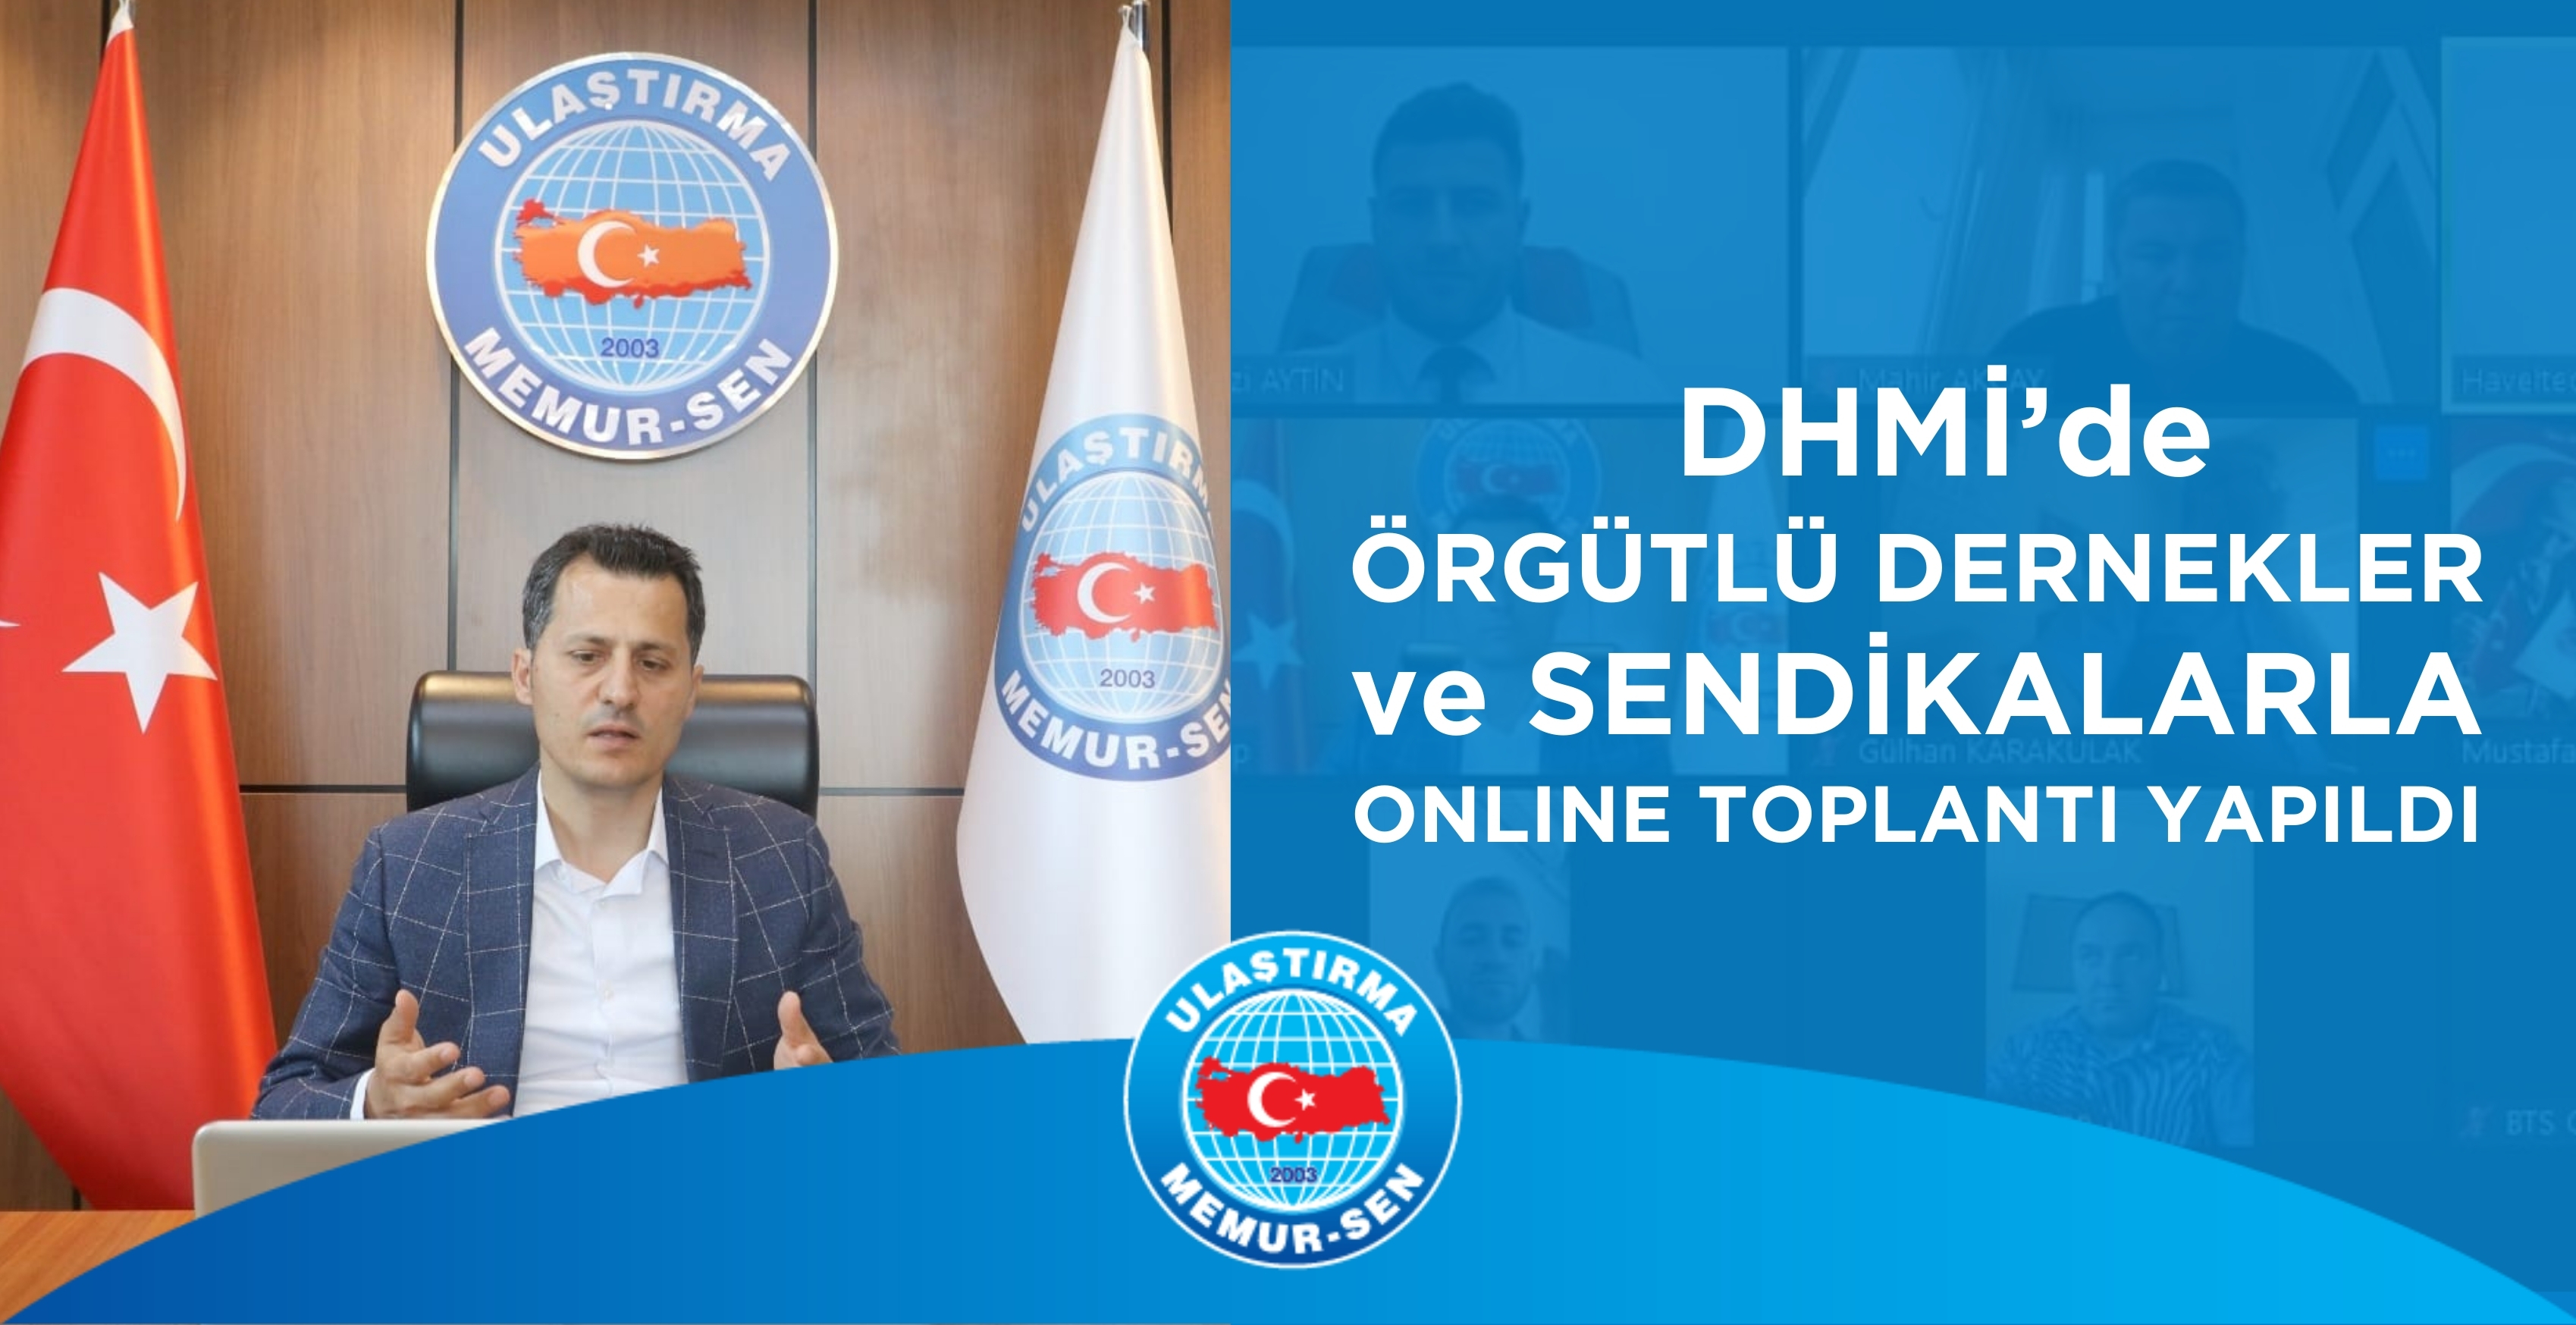 DHMİ’de Örgütlü Dernekler ve Sendikalarla Online Toplantı Yapıldı